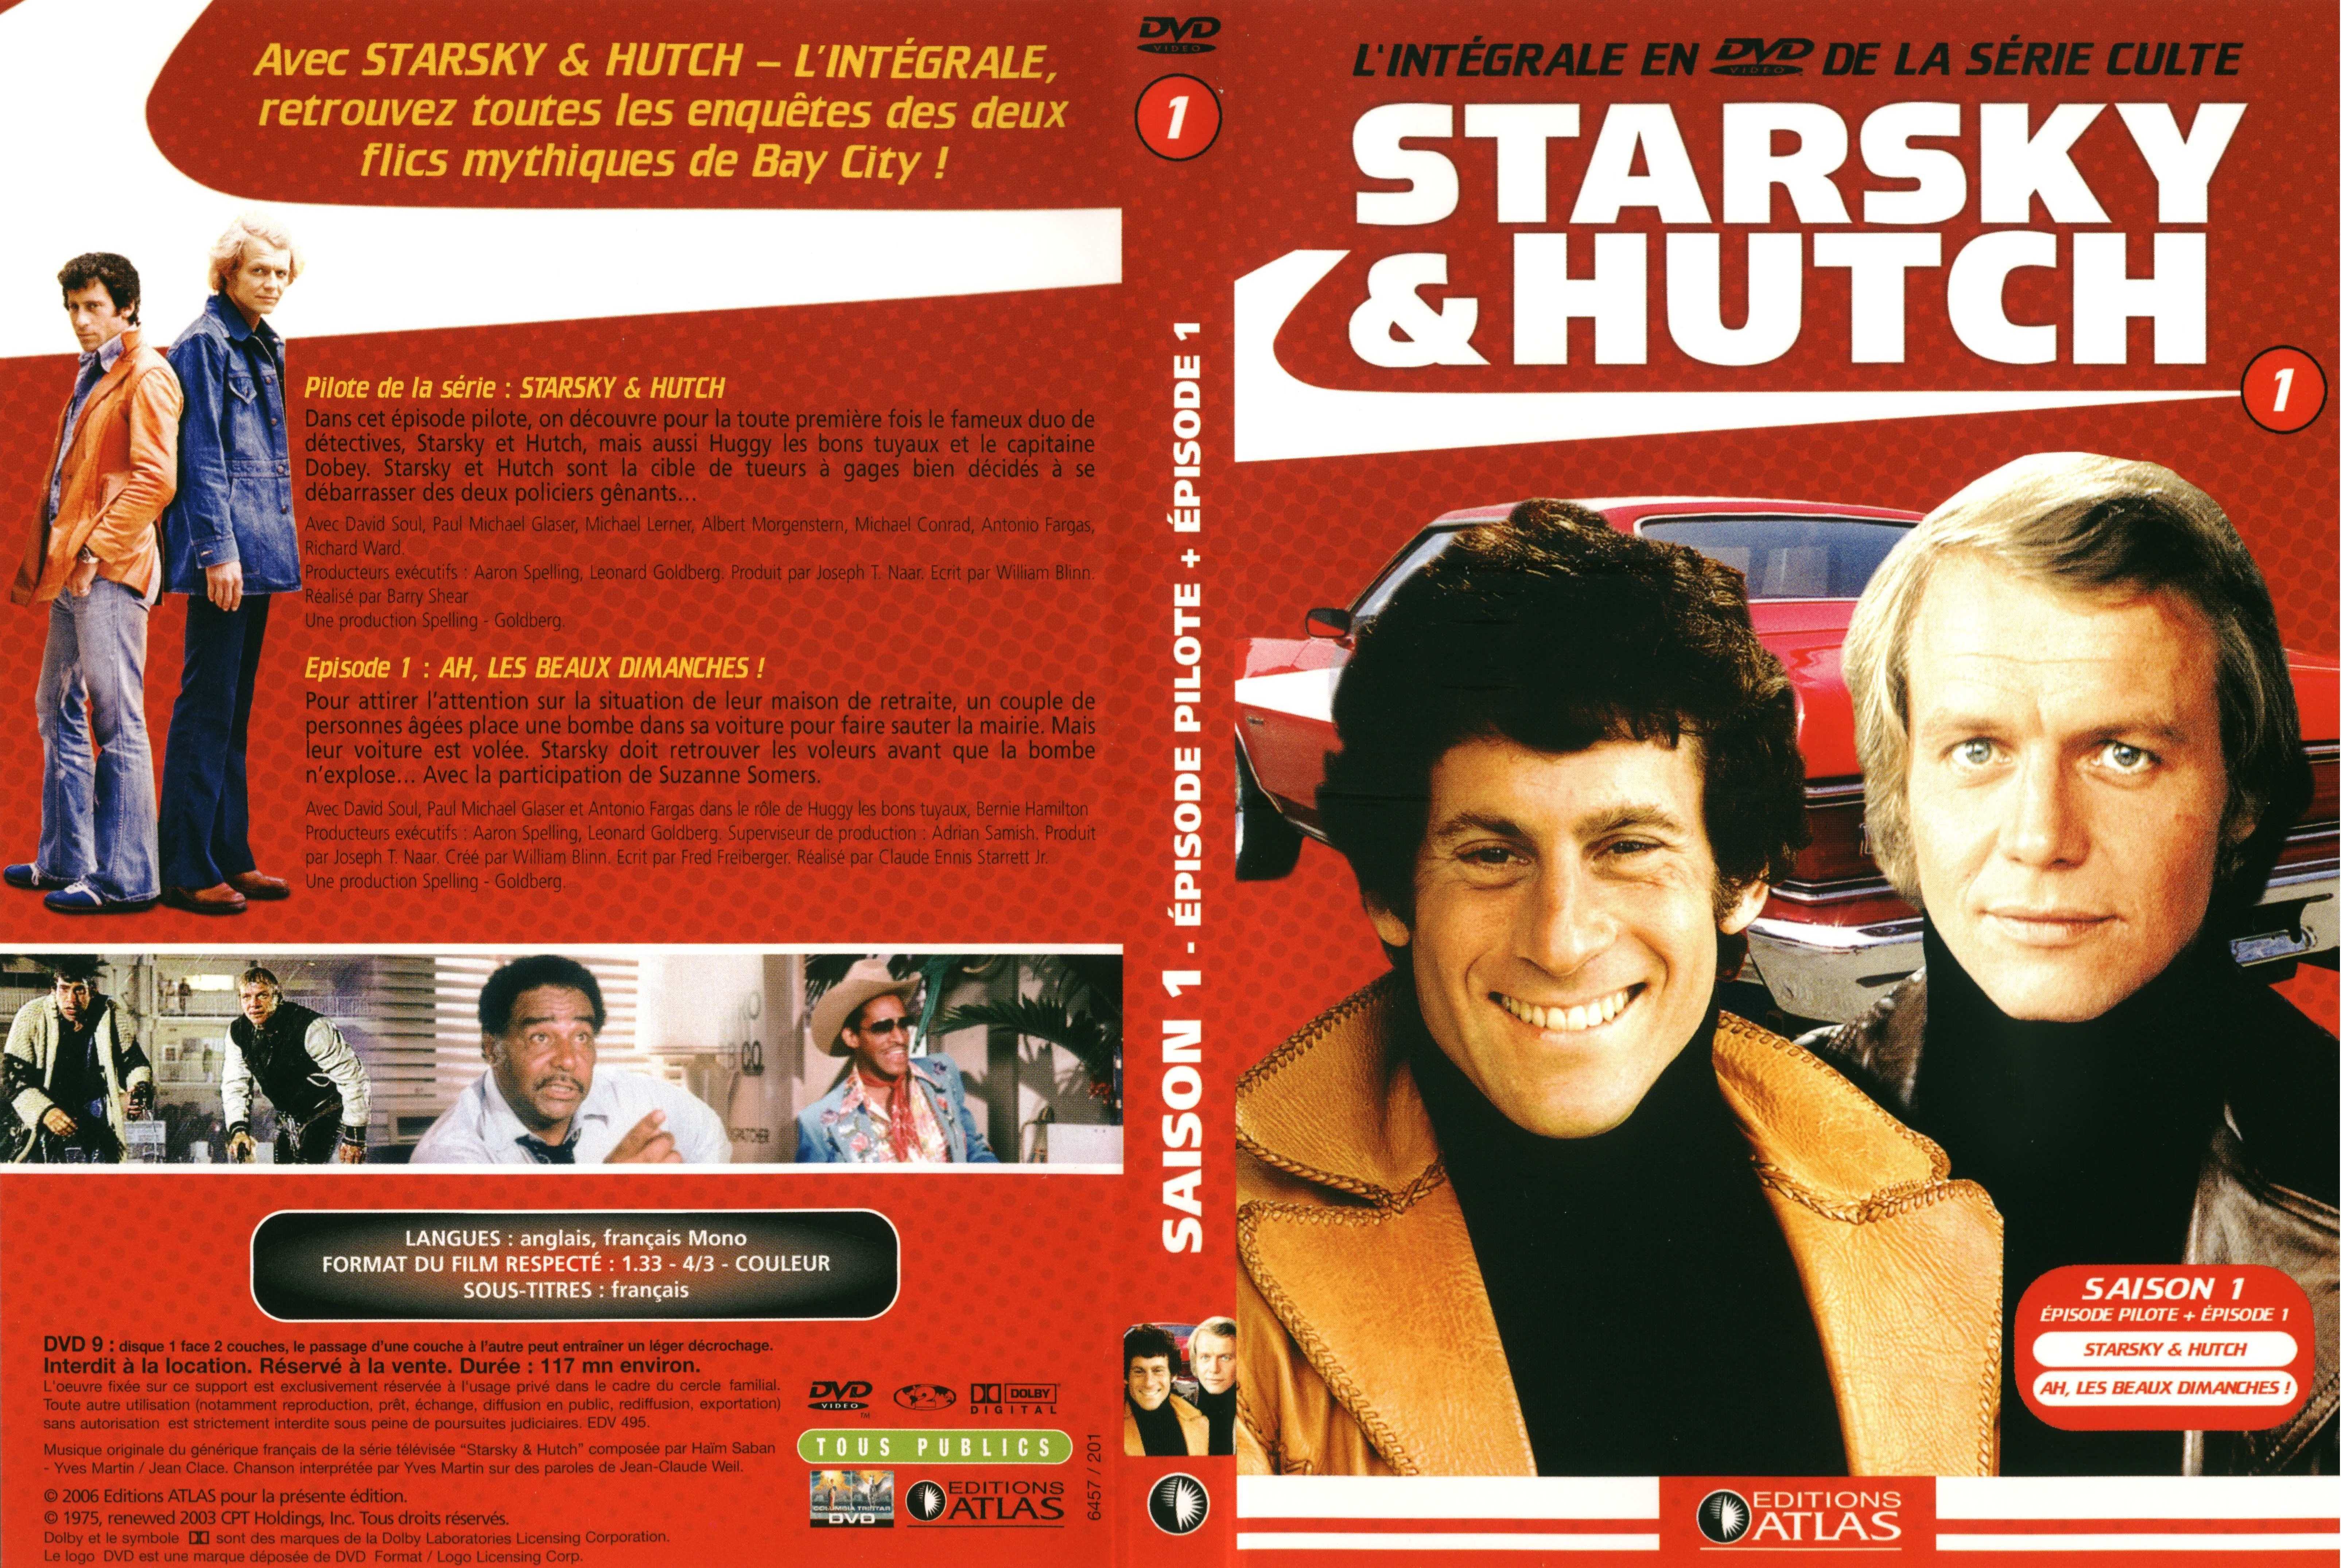 Jaquette DVD Starsky et Hutch saison 1 vol 1 (Ed Atlas)